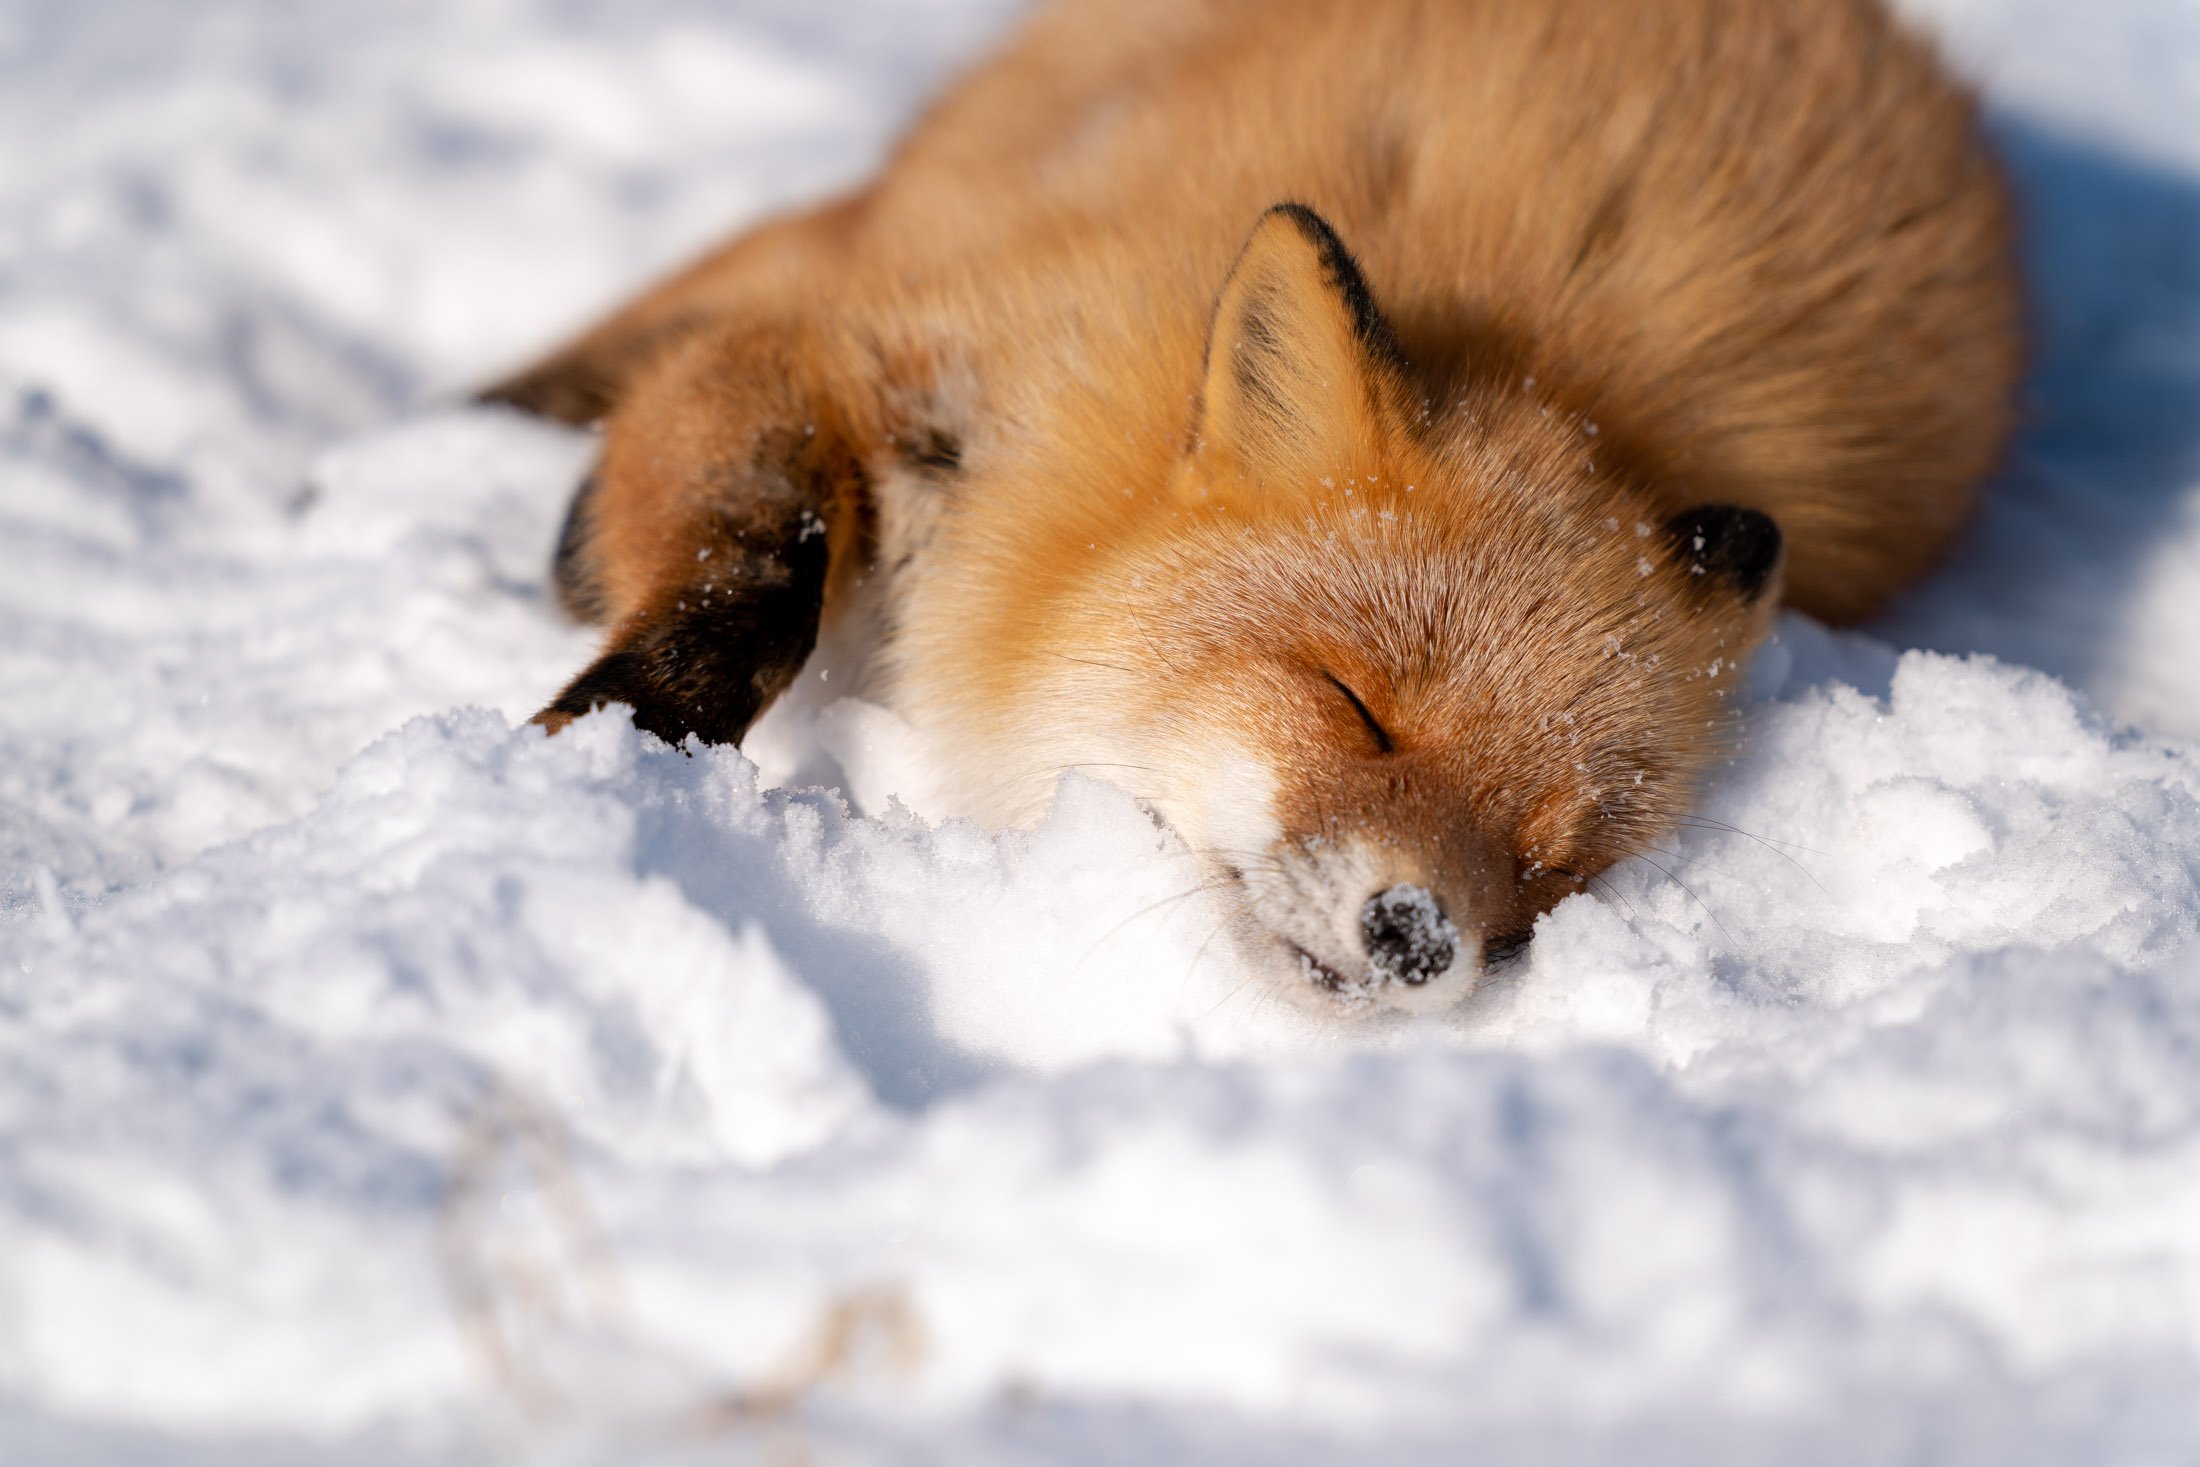 Twitter 上的 ヒーさん 走古丹の狐ちゃん 可愛いですね 雪の上に寝転んでじっと待機してたので こちらへの警戒解いて可愛い仕草をしてくれました Sel400f28gm きつね 走古丹 T Co Iasjlu7ovi Twitter